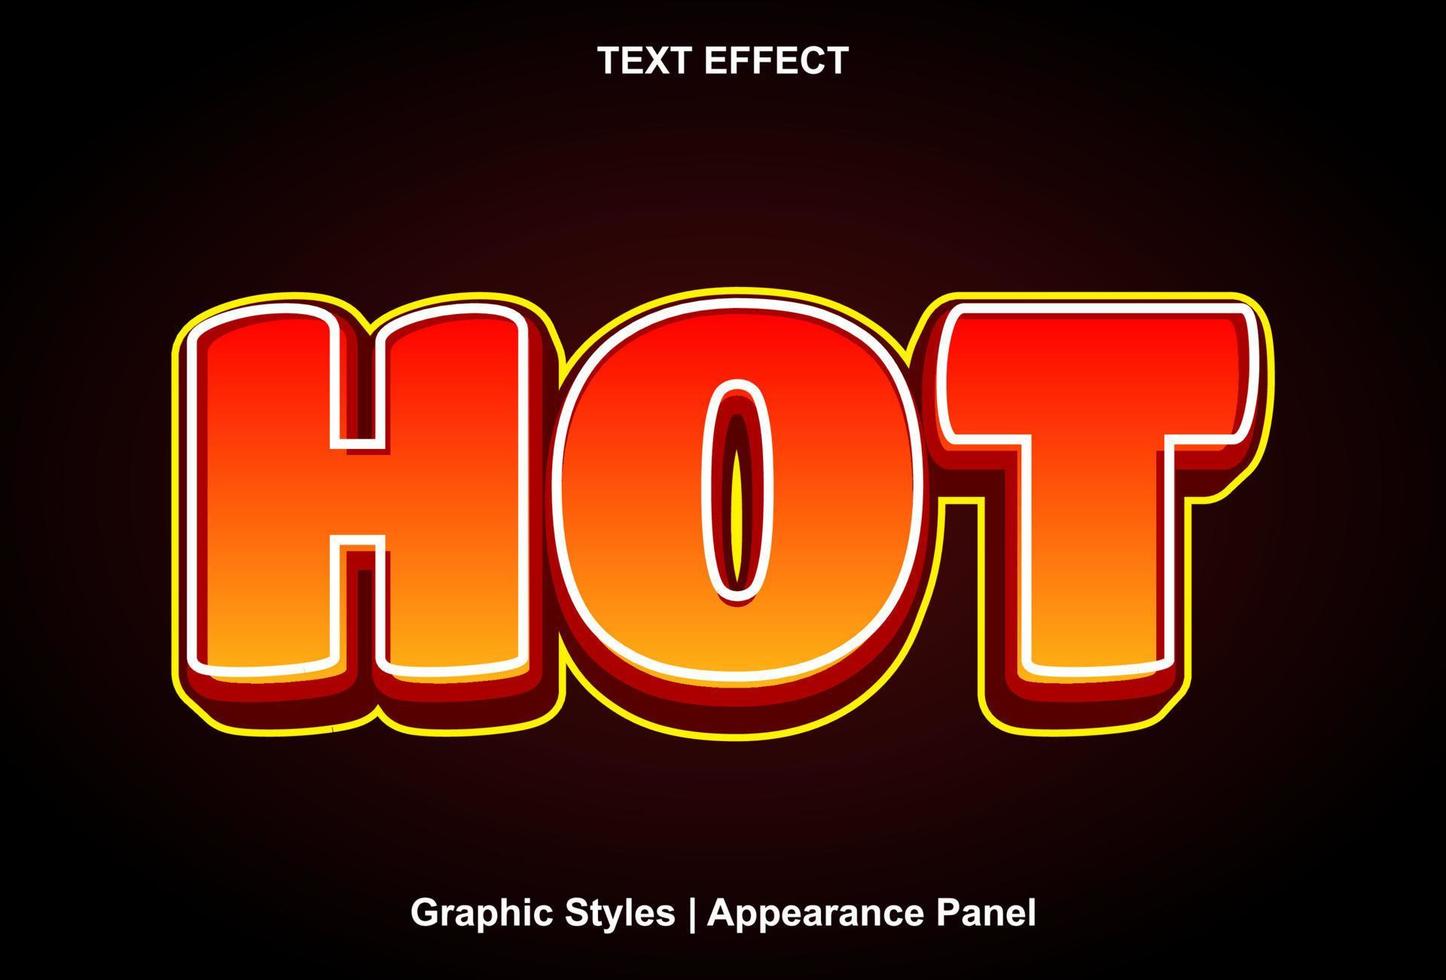 efecto de texto caliente con estilo gráfico y editable vector